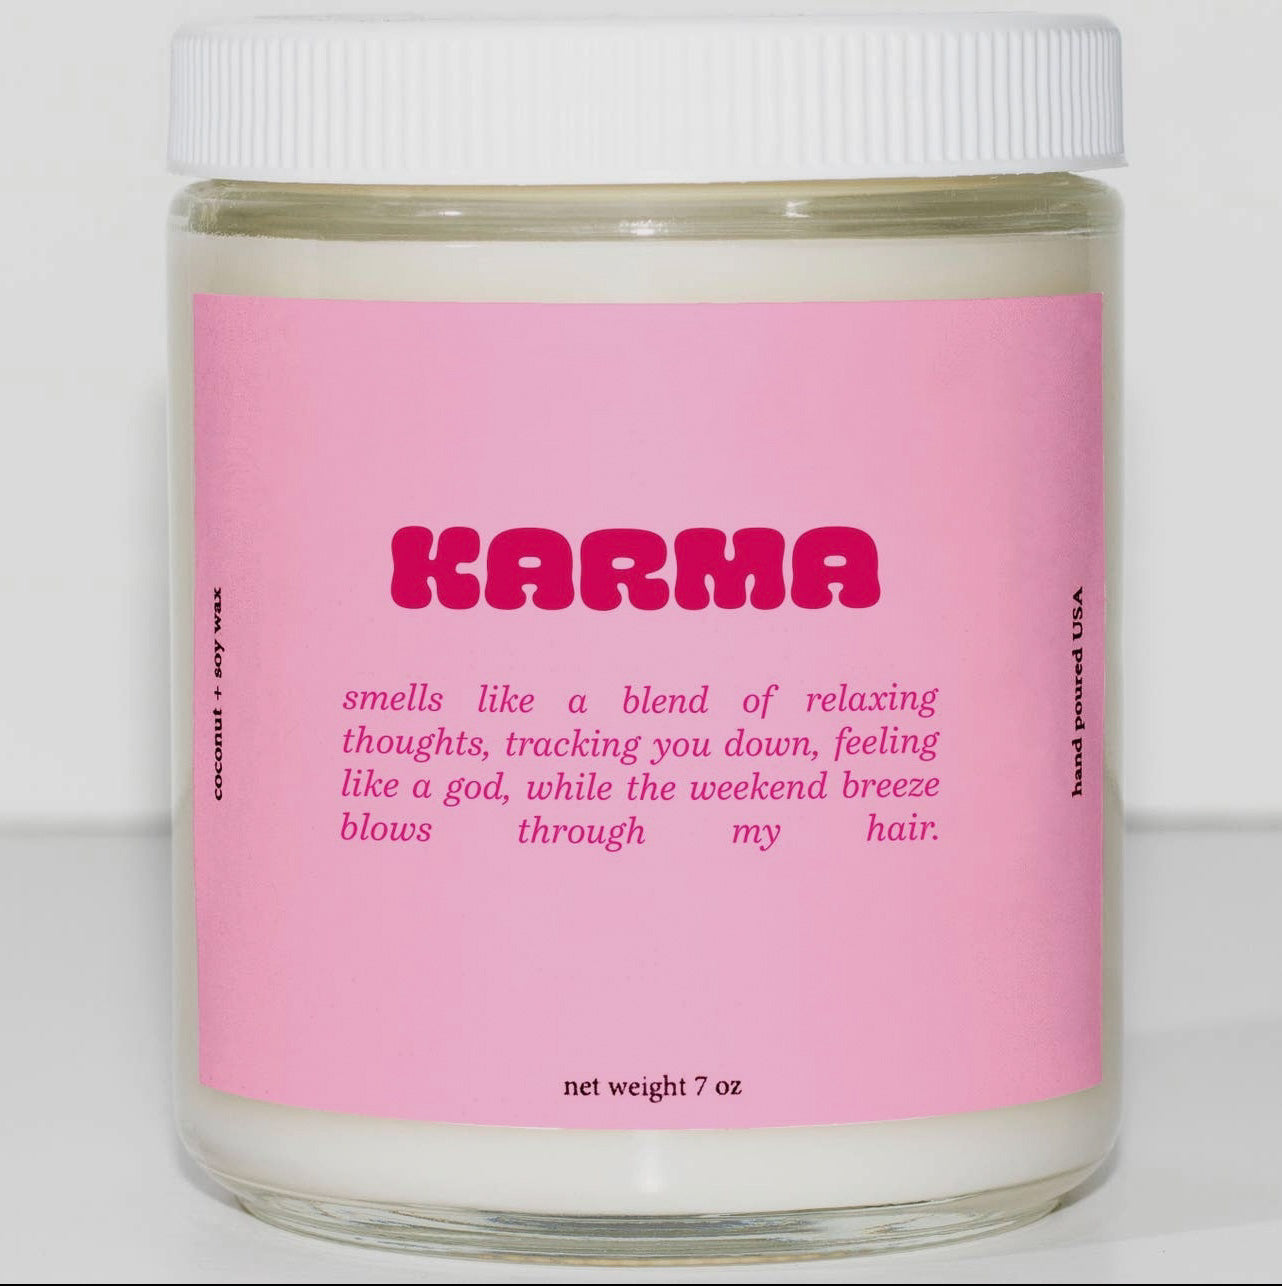 Karma Candle